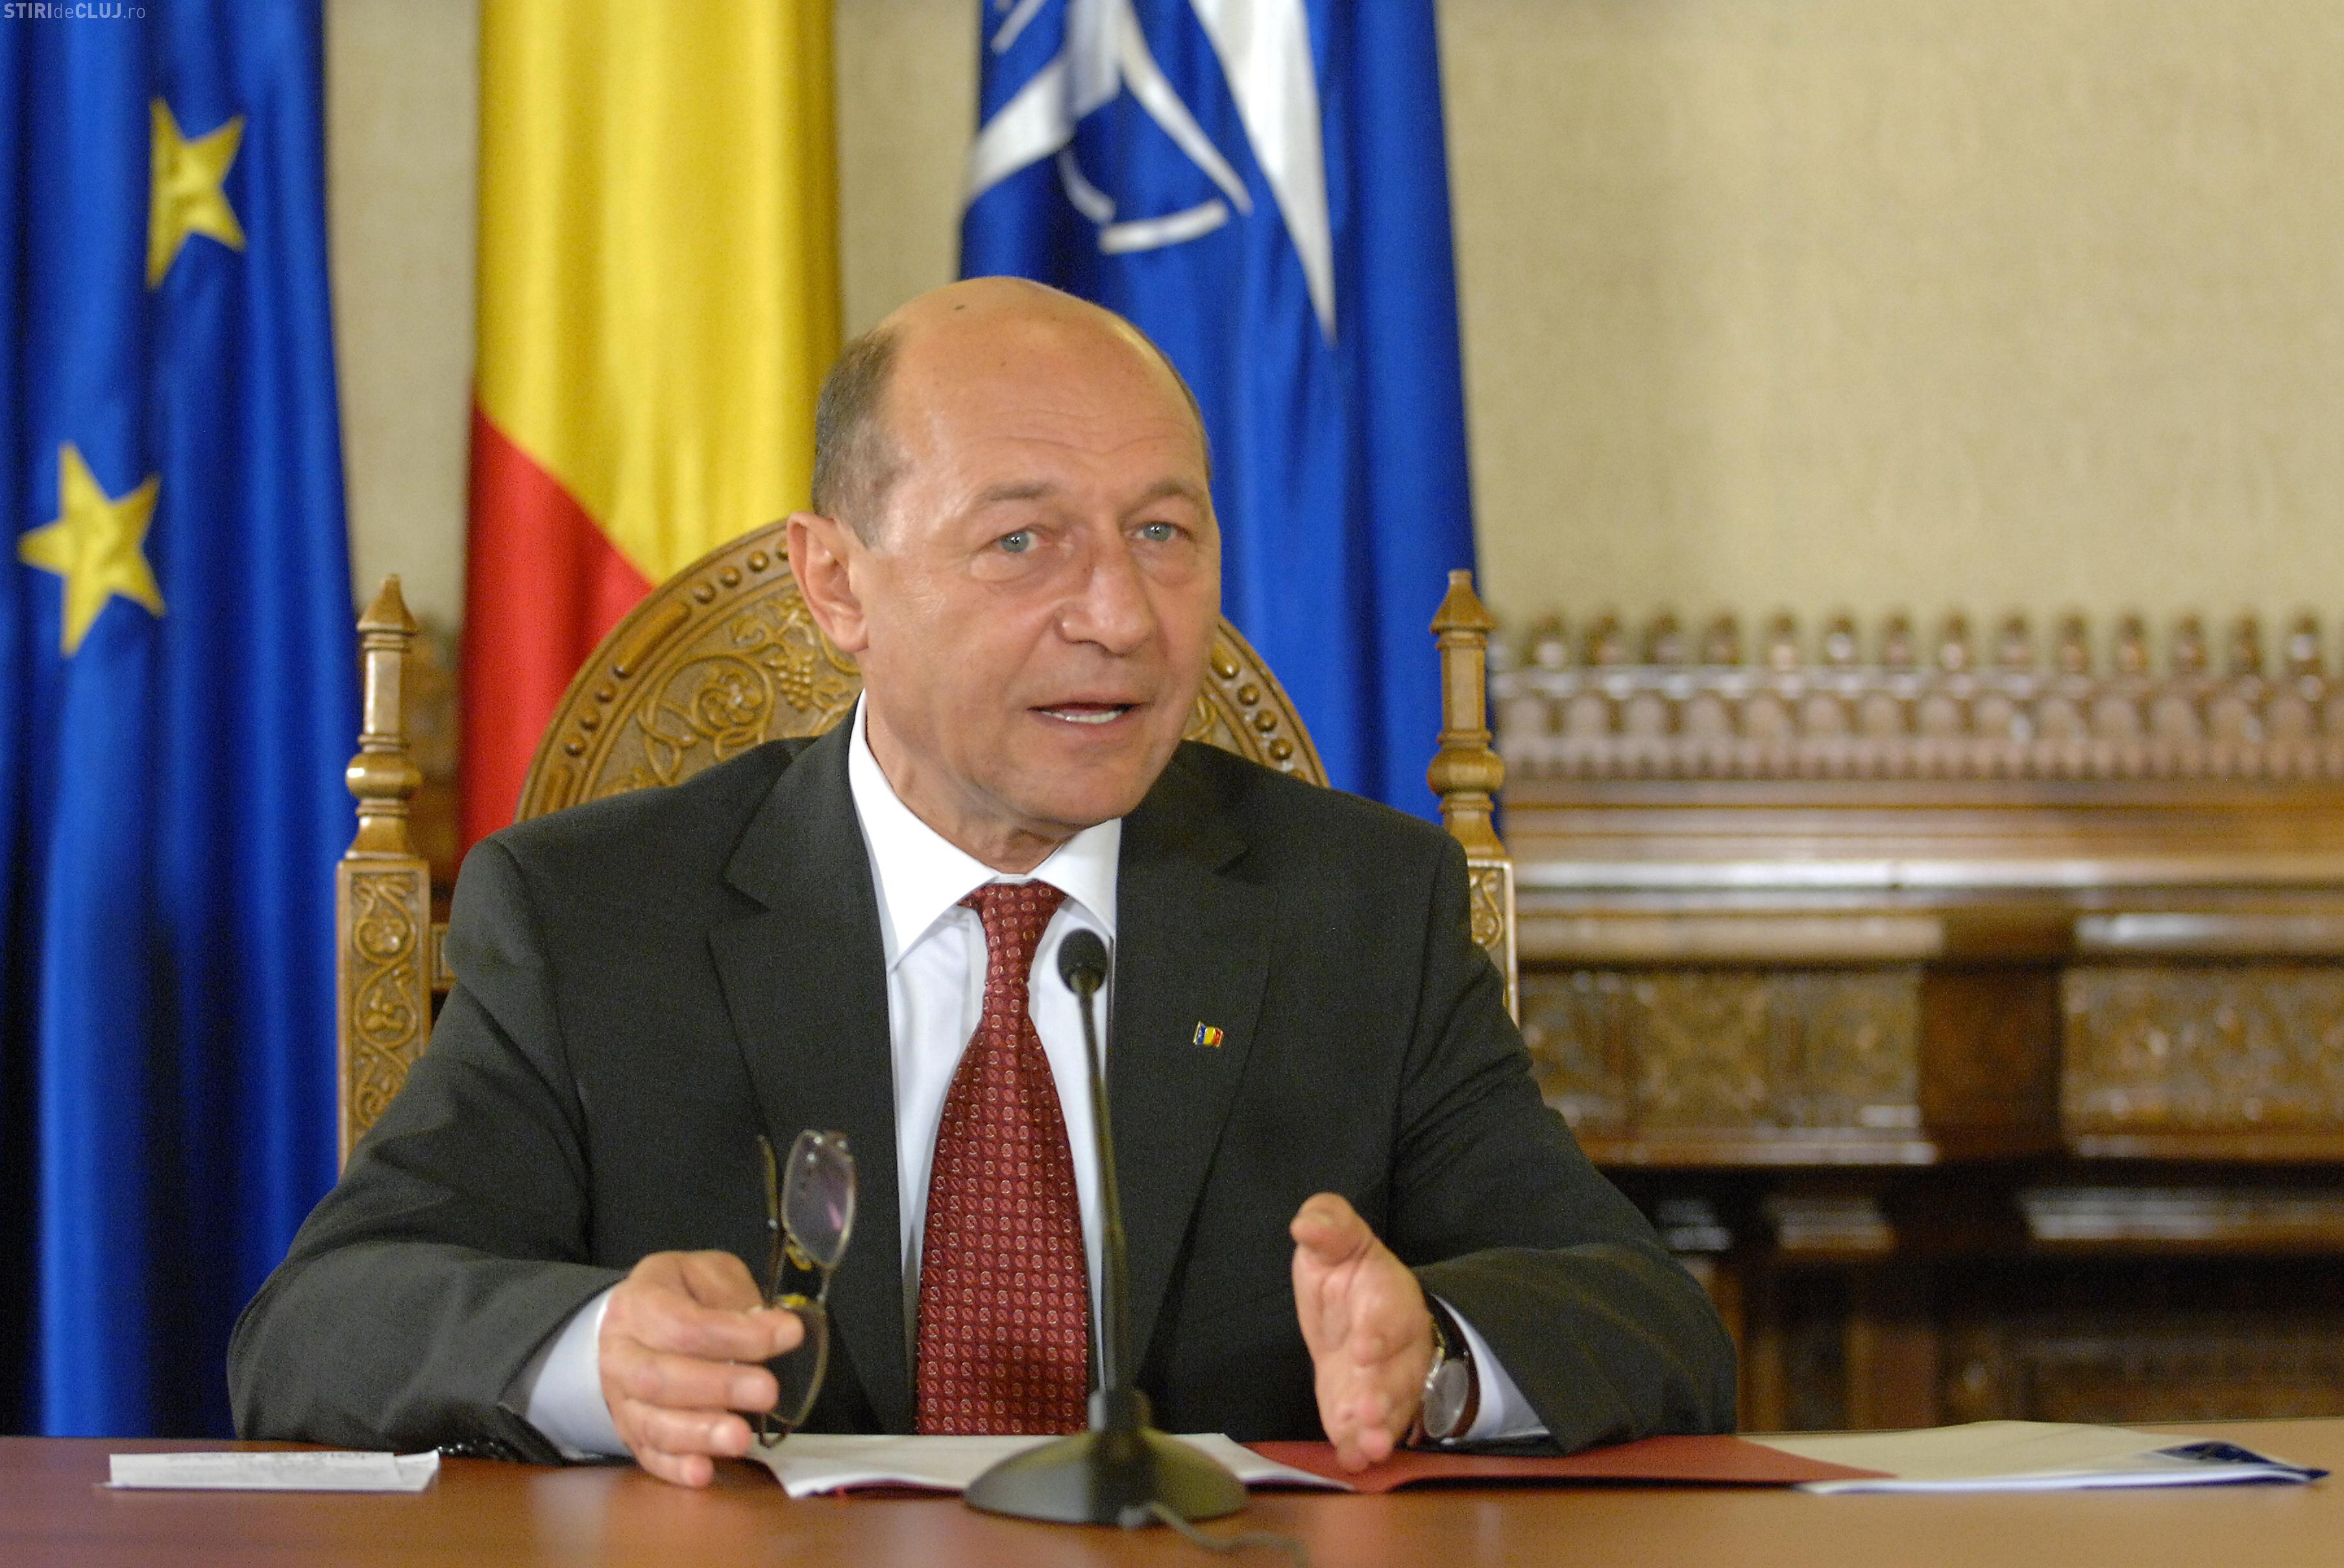 marking thief the end Traian Basescu, despre proiectul Rosia Montana: "Acum il sustin mai mult  decat oricand" - Ştiri de Cluj